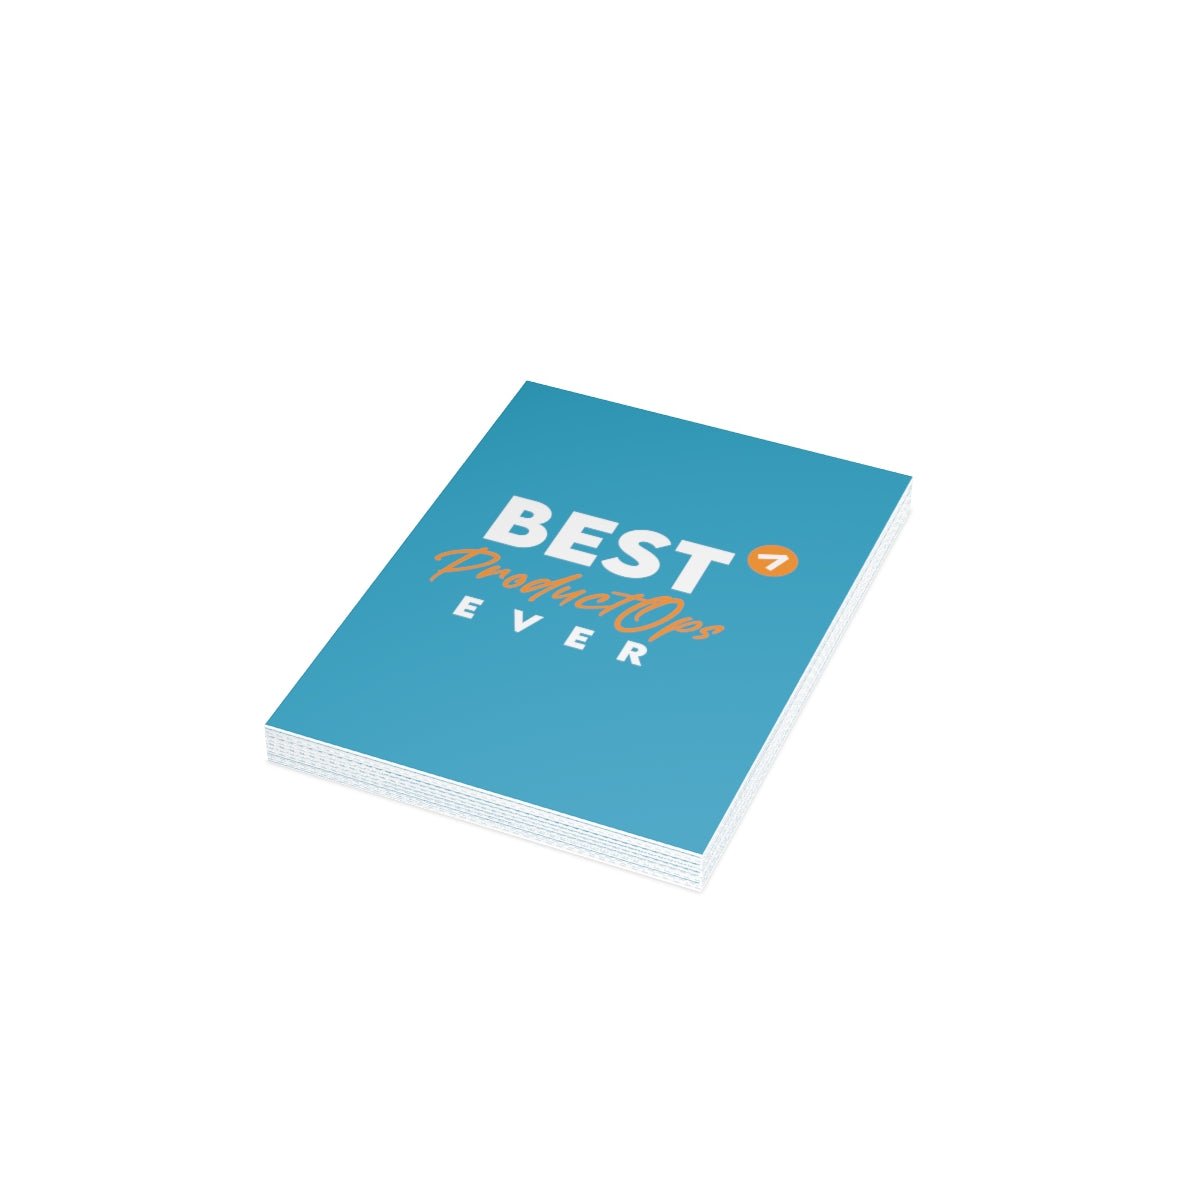 Best Product Operations ever - Orange Blue - Tarjetas de felicitación plegadas (1, 10, 30 y 50 piezas)